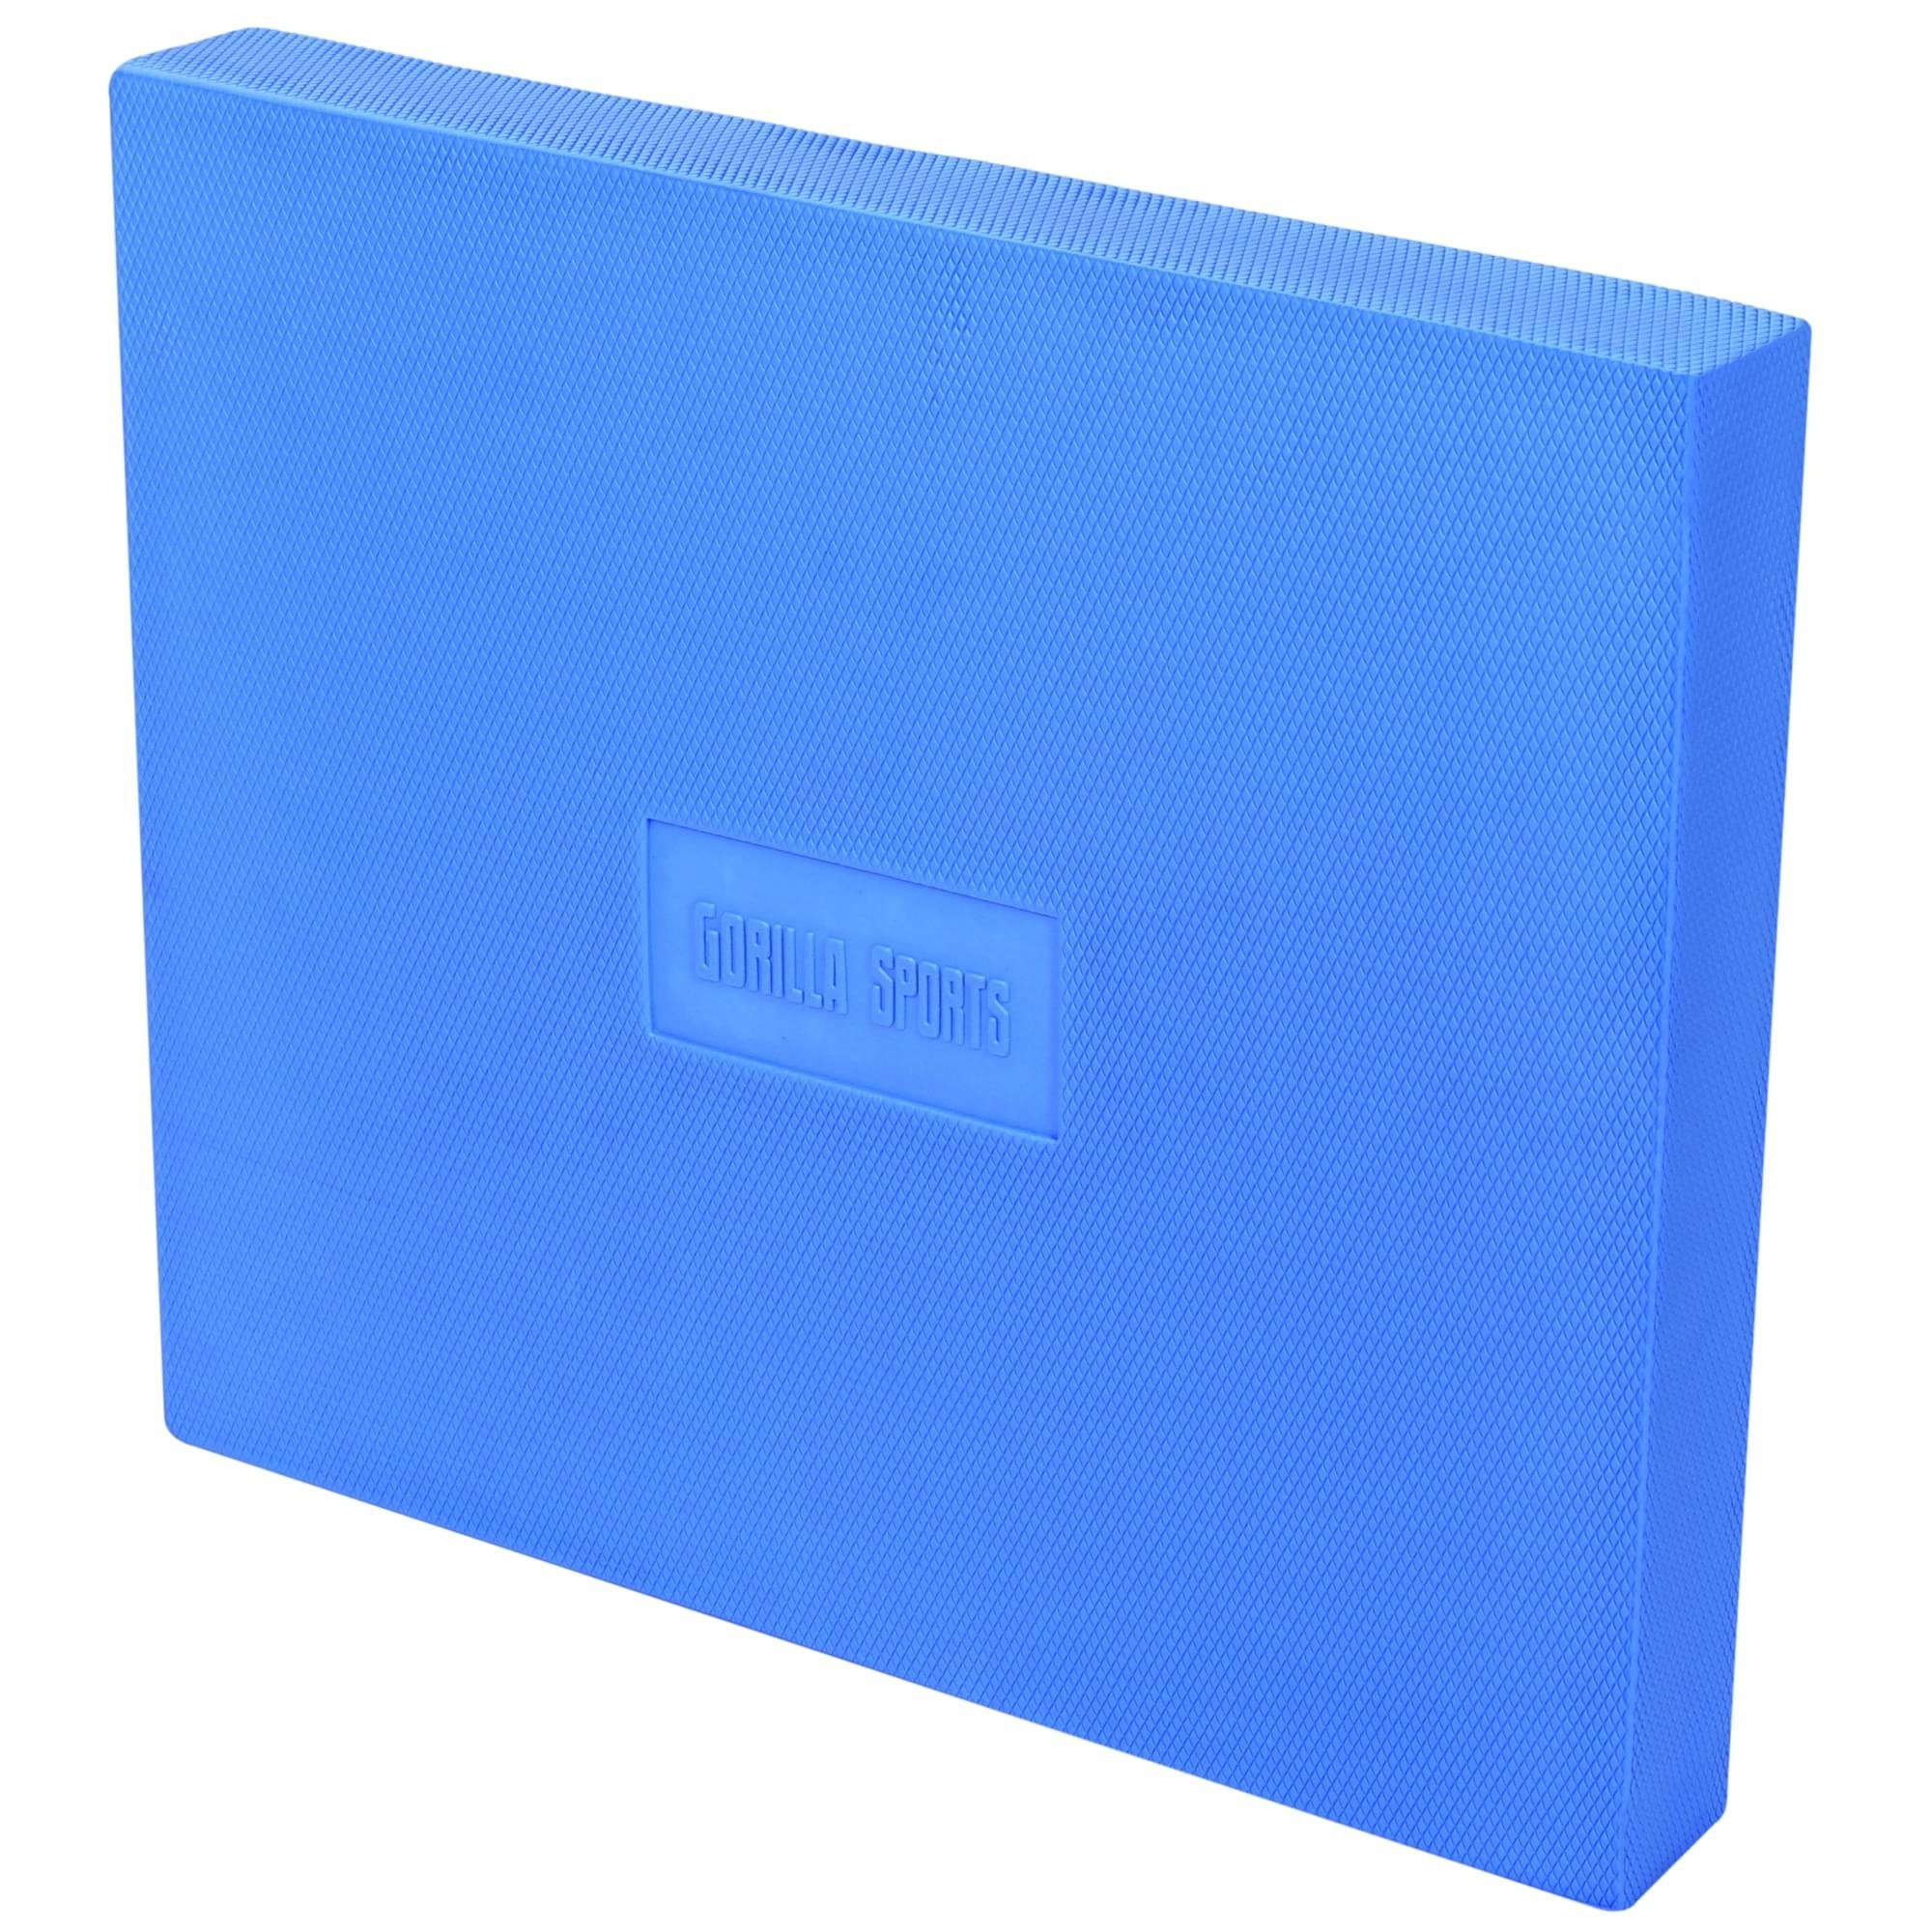 für Balance Koordination, SPORTS Farbwahl und Balance Blau 47x40x5,5cm, GORILLA Pad Pad, Gleichgewicht